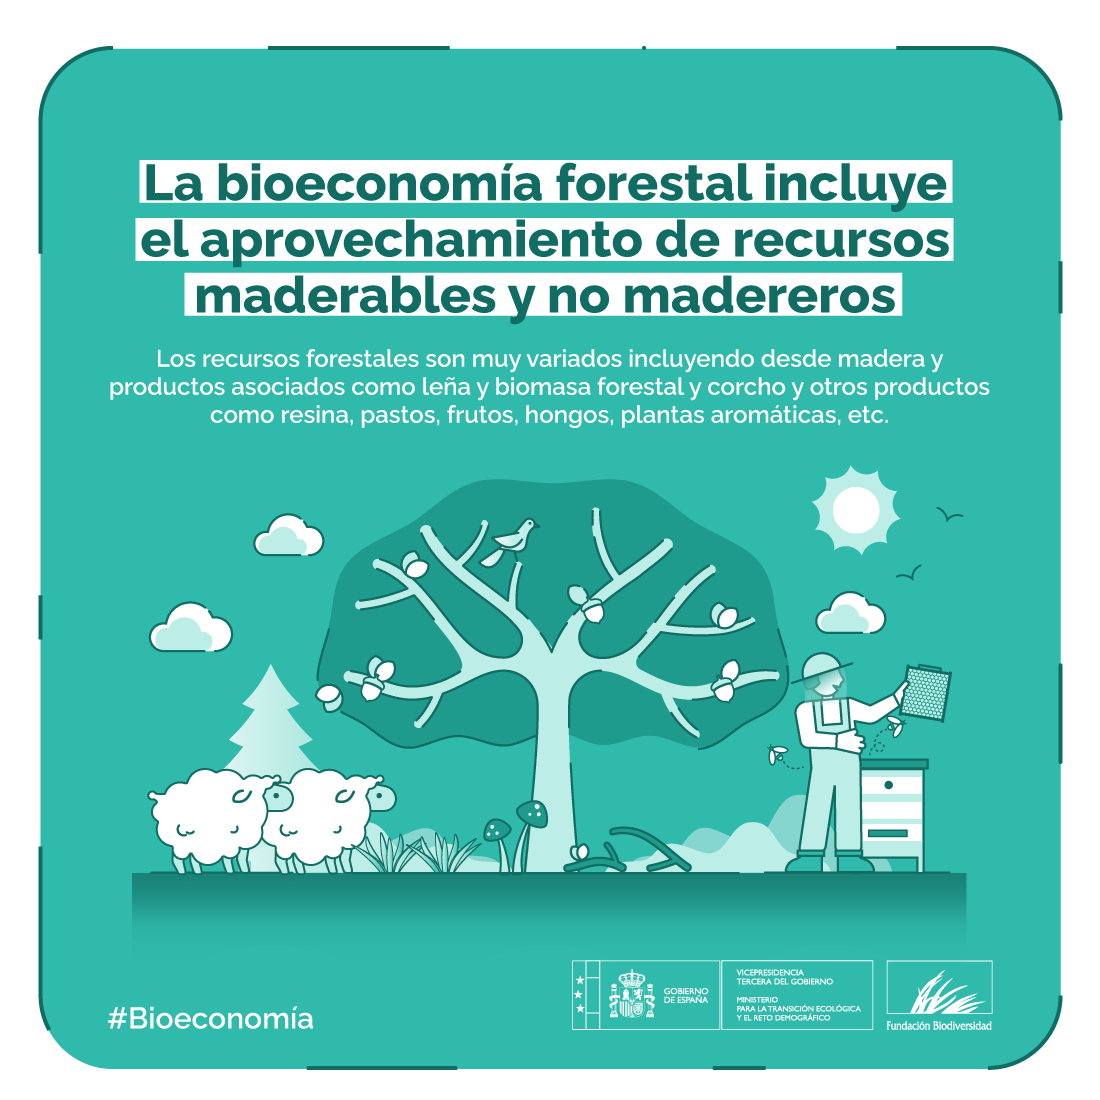 🇪🇸 España es el segundo país de la Unión Europea con mayor superficie forestal 🌳 después de Suecia.

Contamos con 28 millones de hectáreas.

Por ello, la bioeconomía forestal supone una gran oportunidad para el futuro de todos.

#Bioeconomía